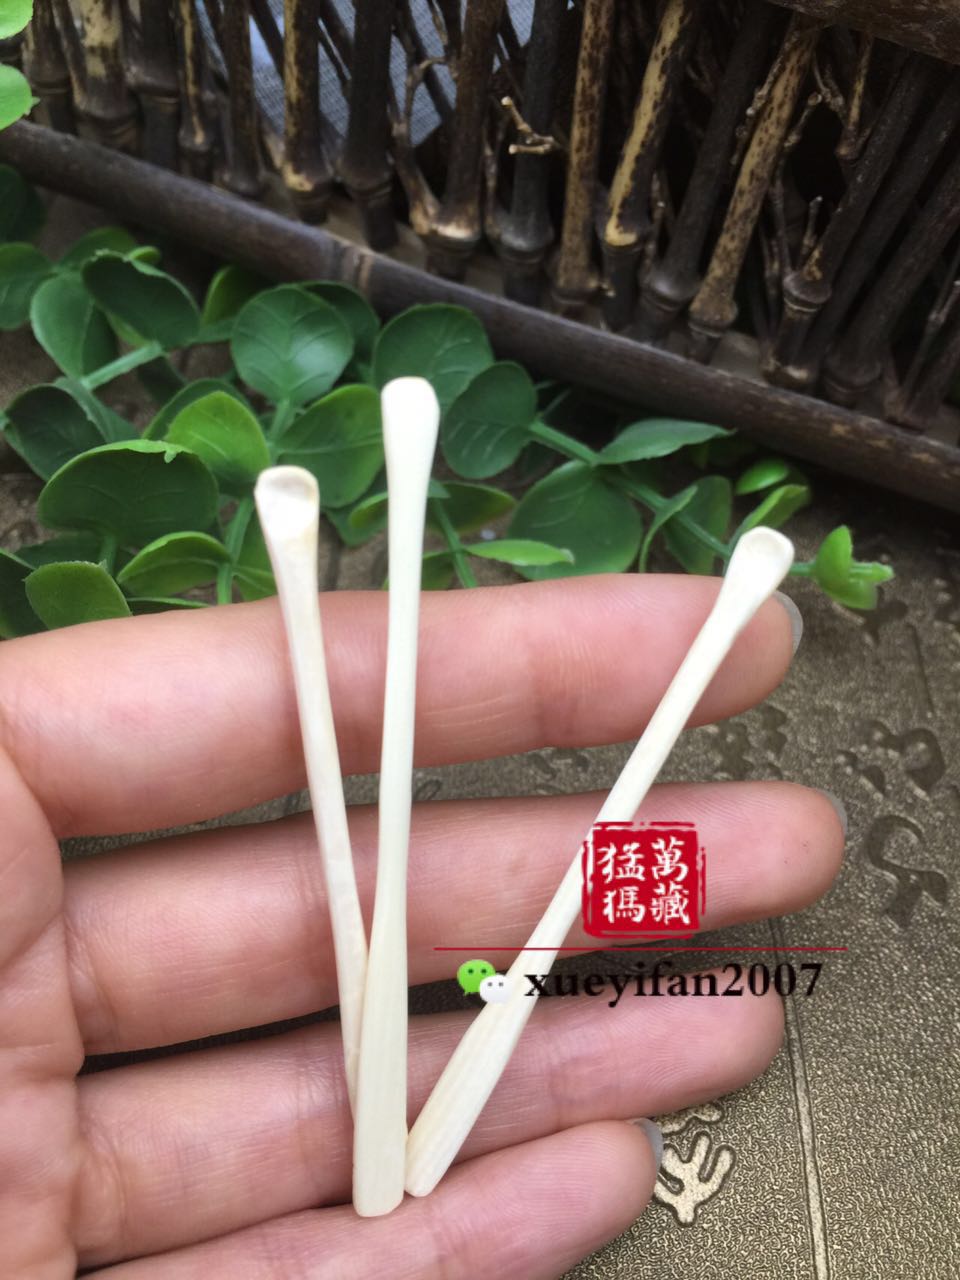 天然猛犸象牙制品竹节掏耳勺牙雕随机发货支持检测